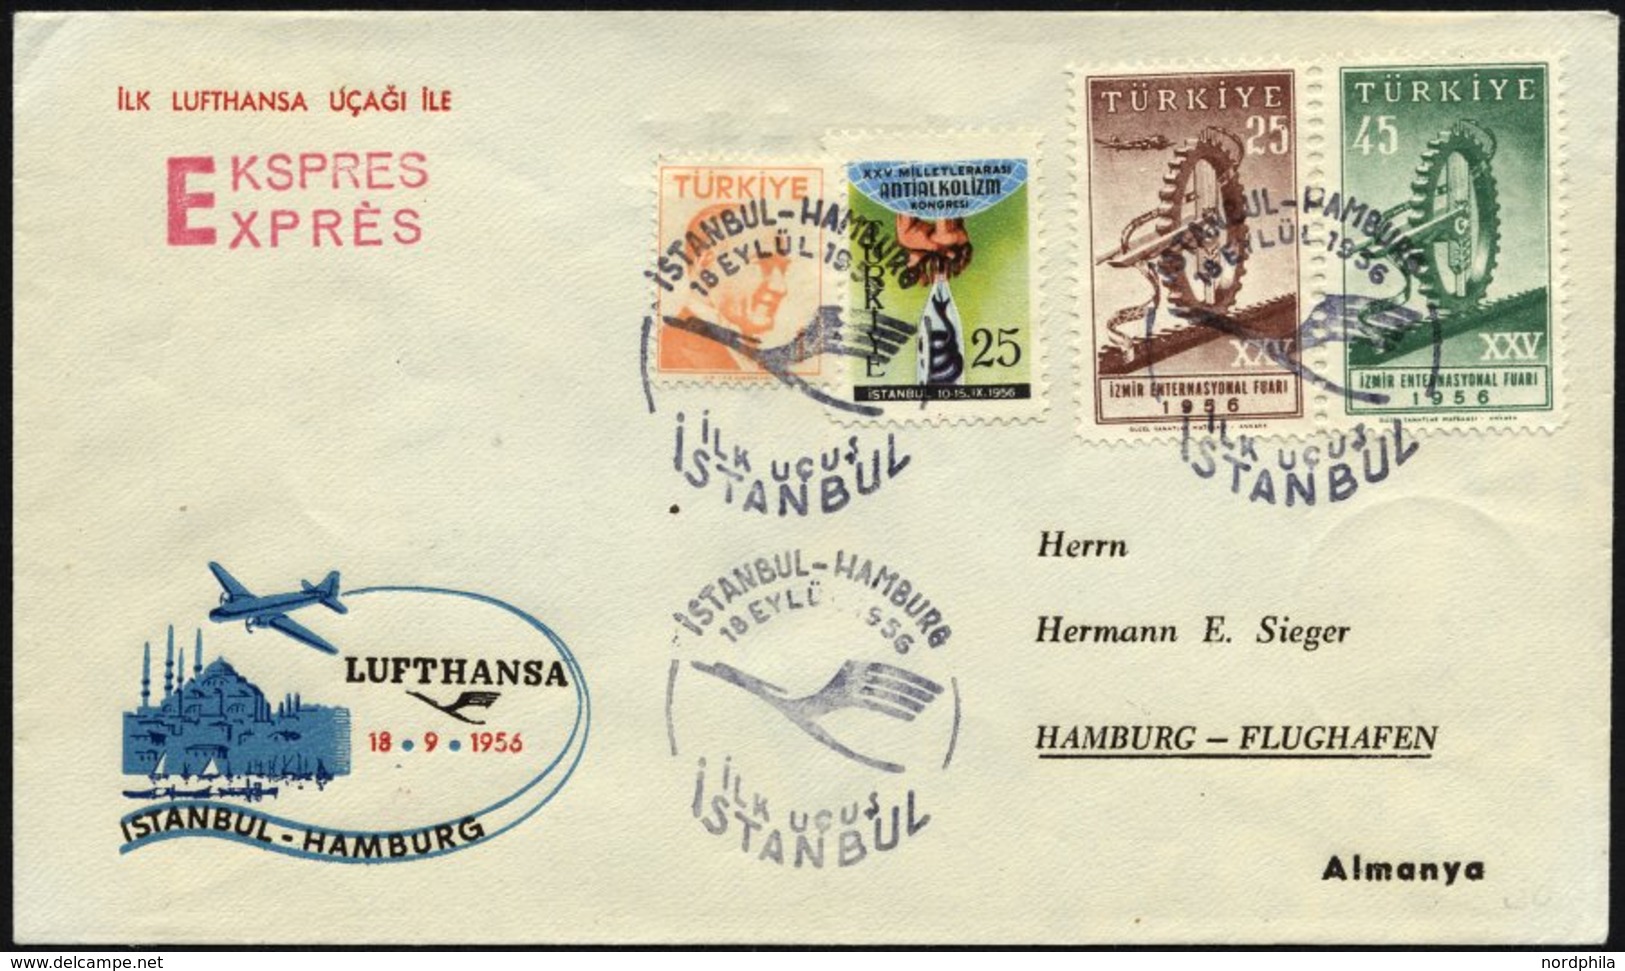 DEUTSCHE LUFTHANSA 102 BRIEF, 12.9.1956, Istanbul-Hamburg, Prachtbrief - Used Stamps